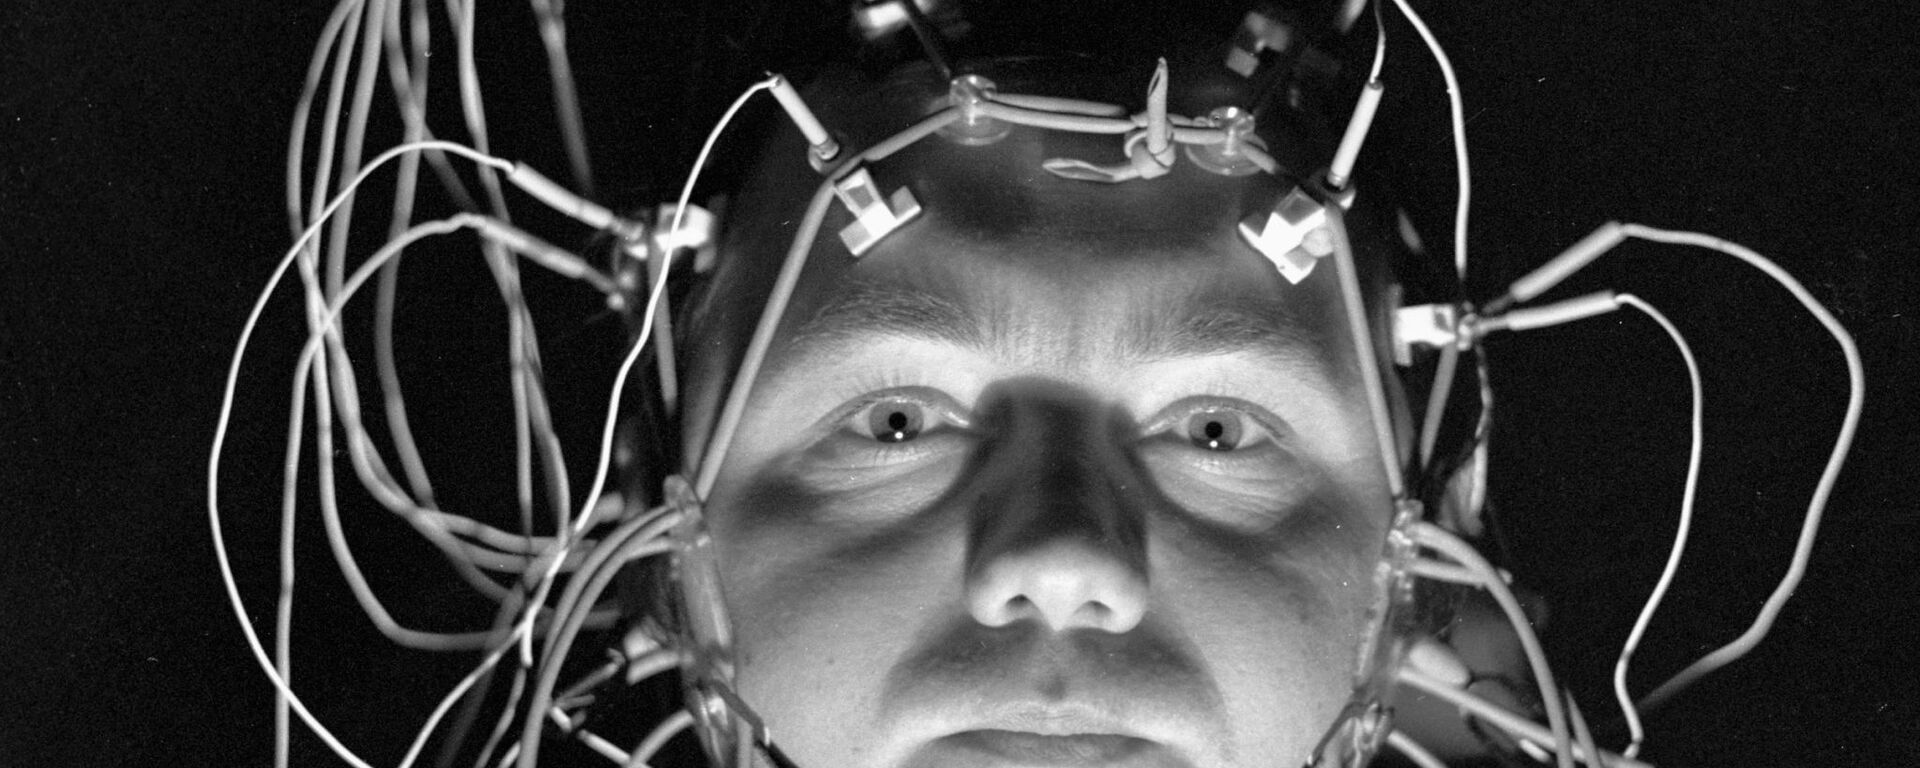 мозг человека - Sputnik Արմենիա, 1920, 22.08.2021